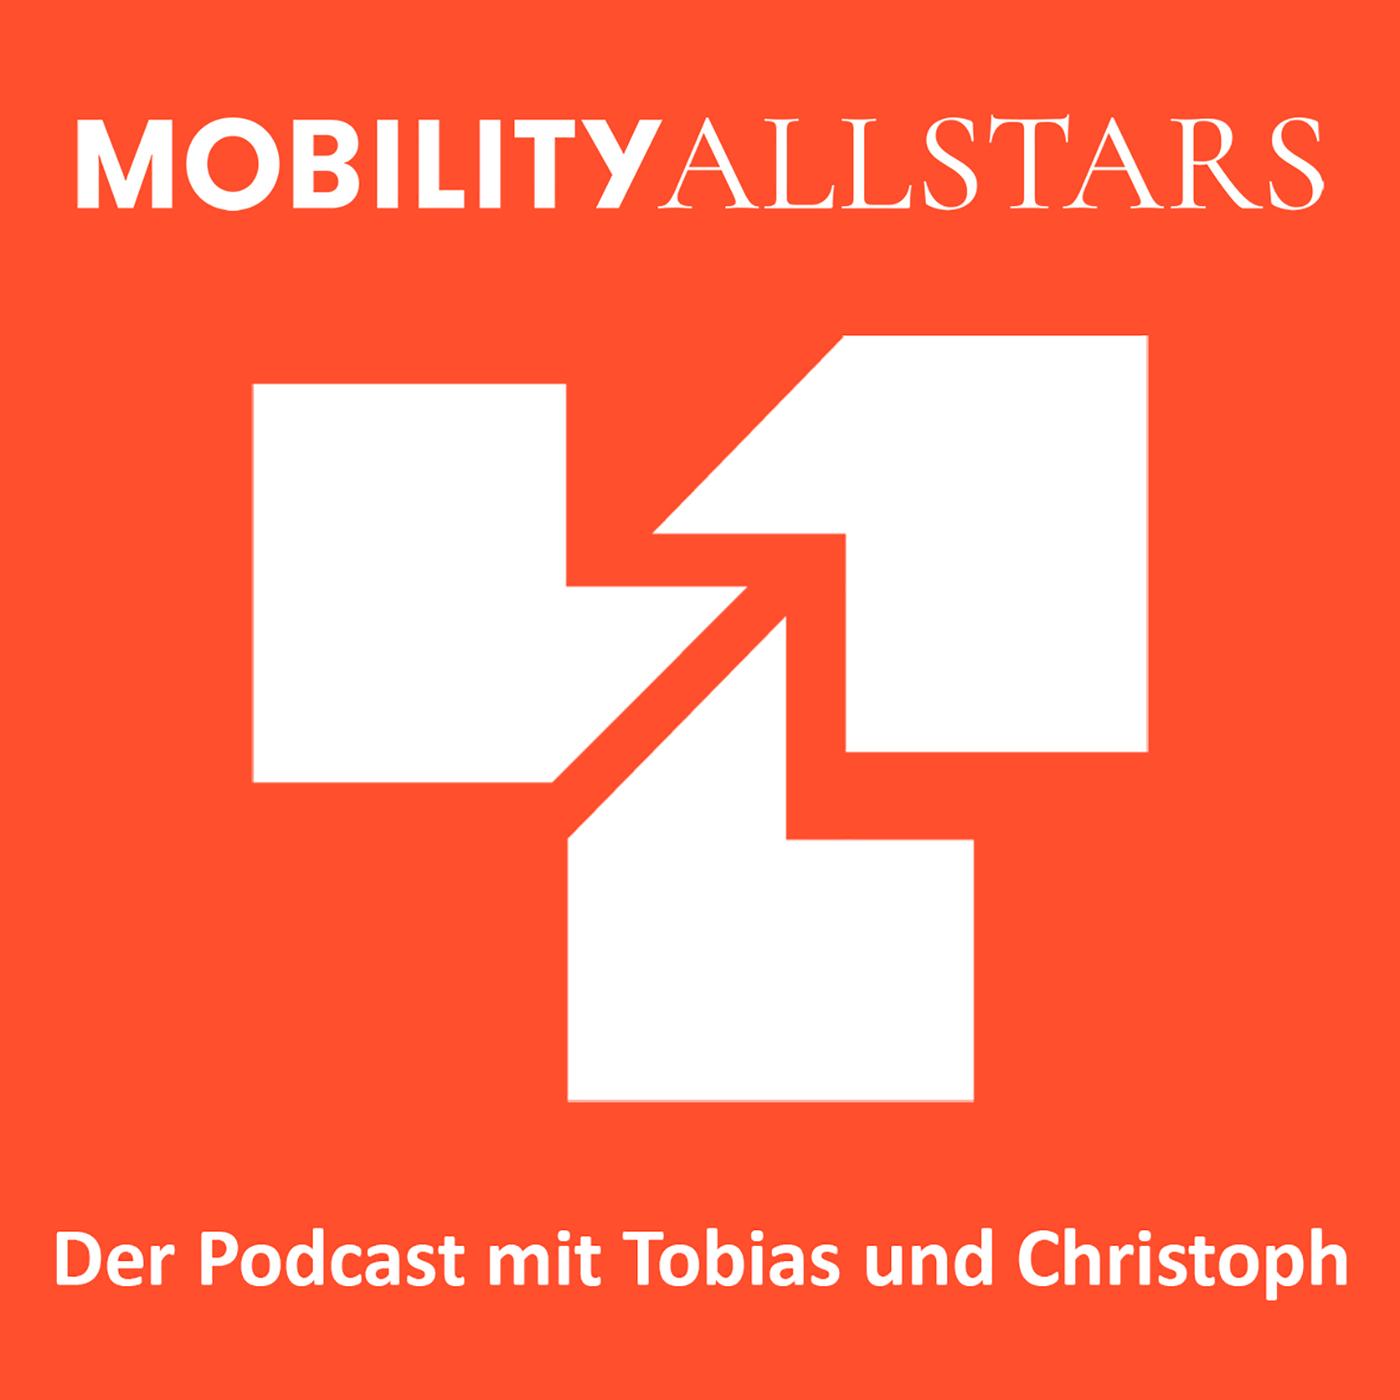 Mobility allstars cover